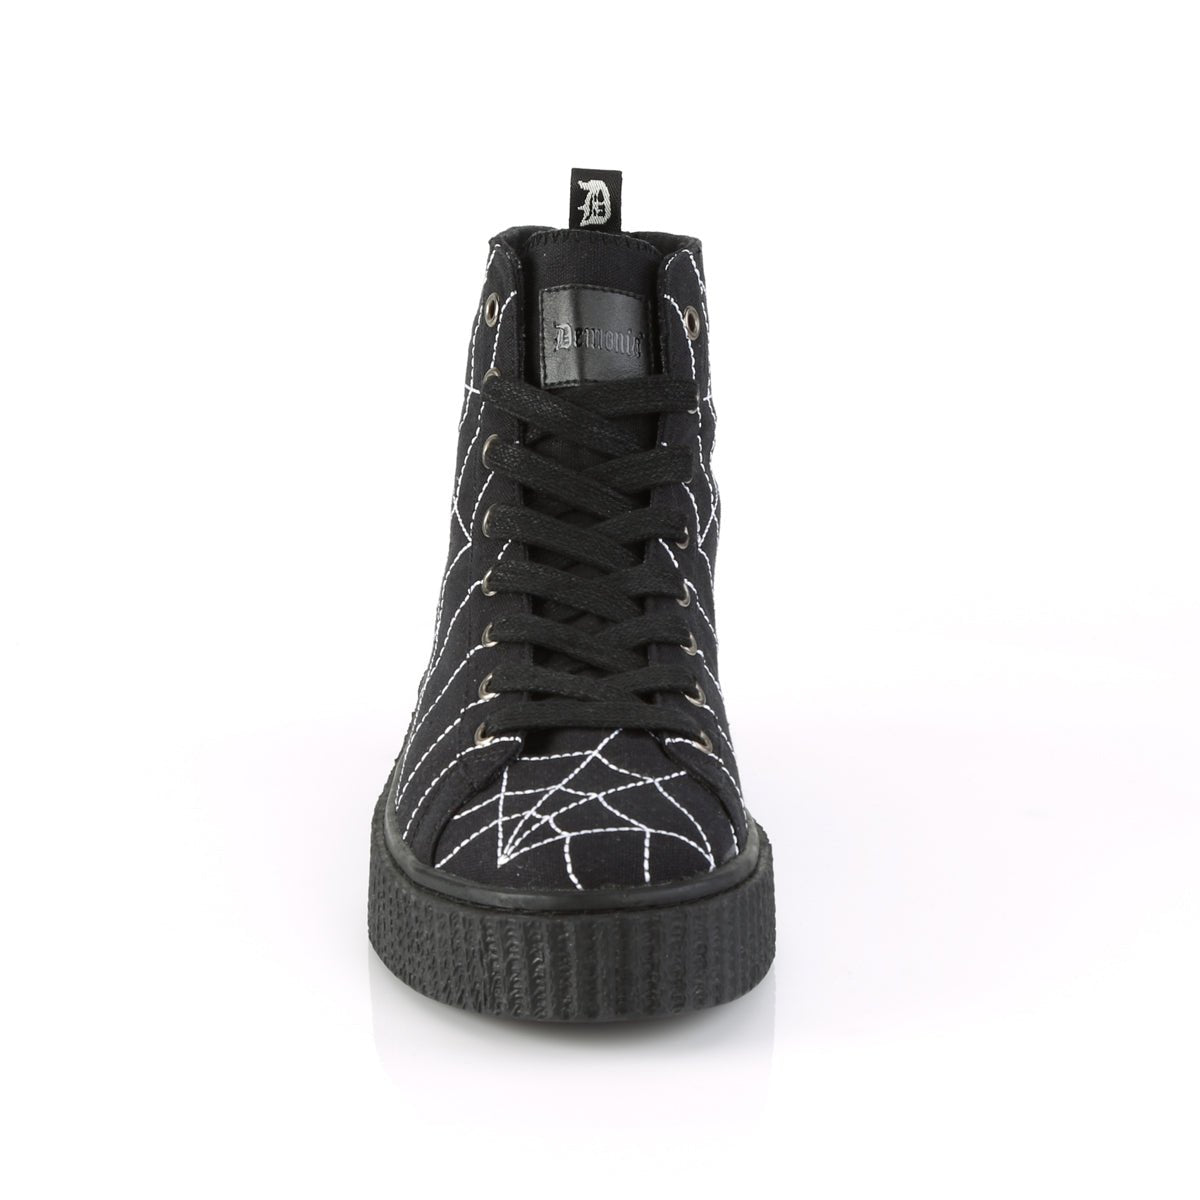 Too Fast | Demonia Sneeker 250 | Black Canvas Unisex Sneakers